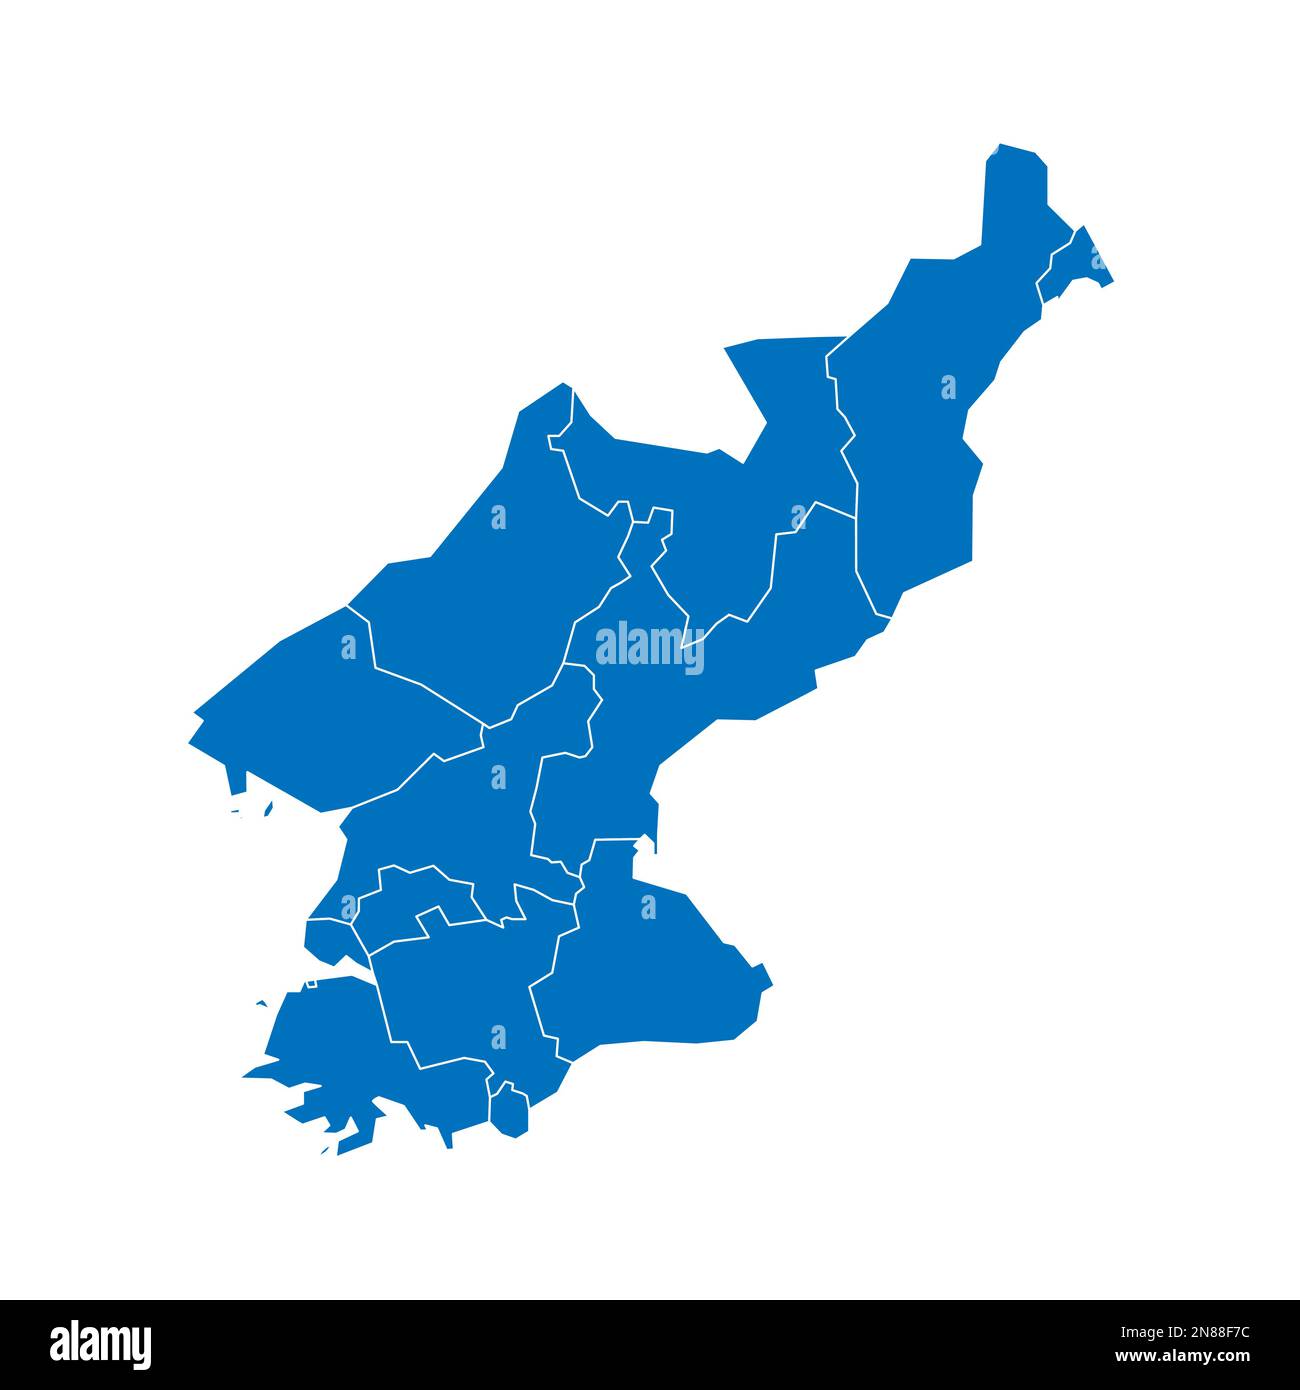 Corée du Nord carte politique des divisions administratives - provinces. Carte vectorielle vierge bleue unie avec bordures blanches. Illustration de Vecteur